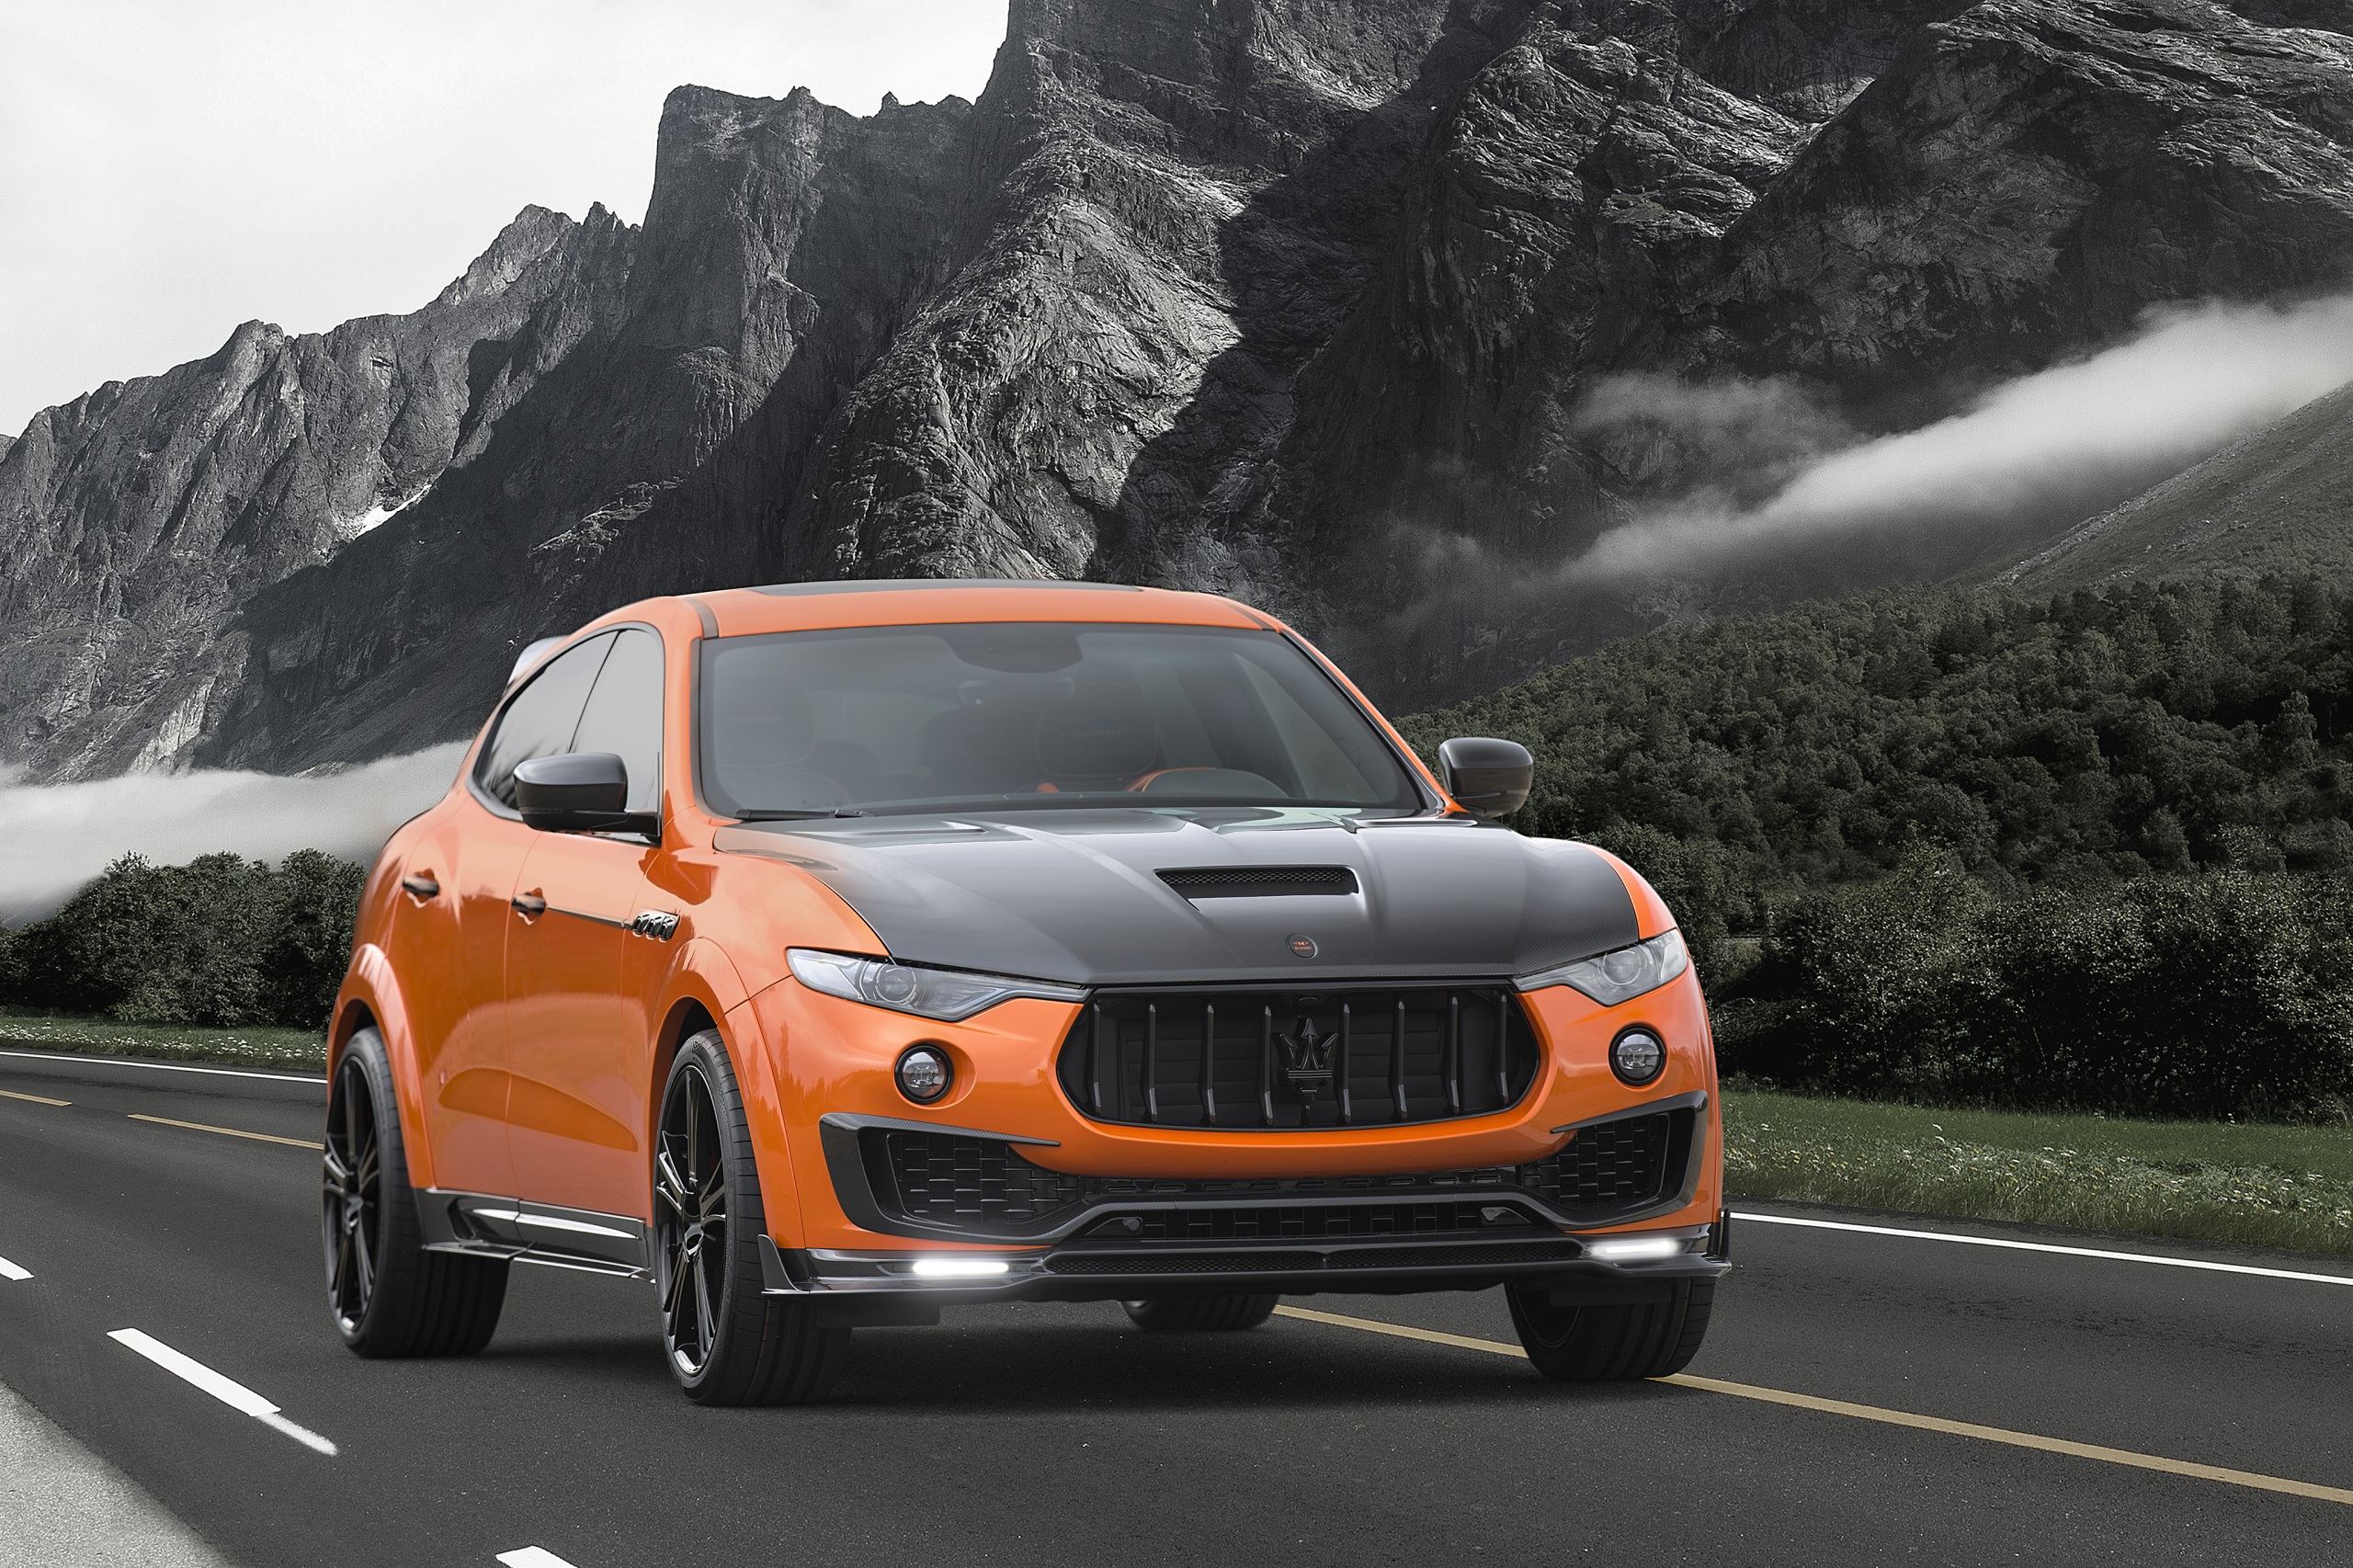 عکس جالب از ماشین نارنجی در جاده کوهستانی با کیفیت عالی 